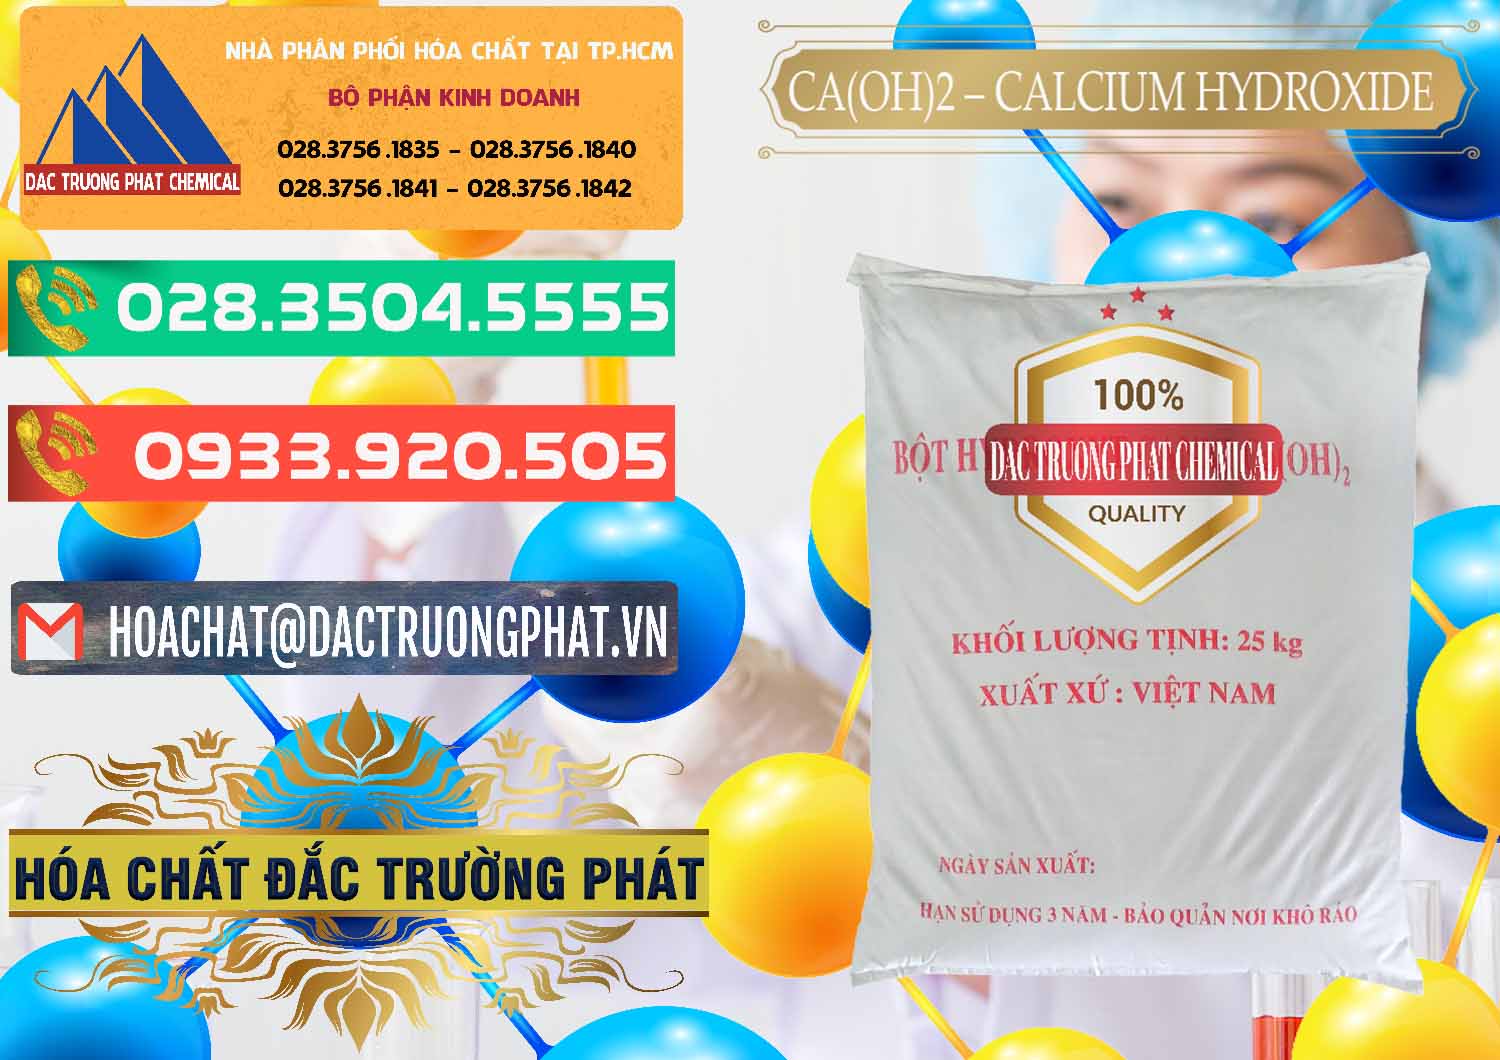 Công ty chuyên kinh doanh - bán Ca(OH)2 - Calcium Hydroxide Việt Nam - 0186 - Công ty chuyên kinh doanh - cung cấp hóa chất tại TP.HCM - congtyhoachat.com.vn